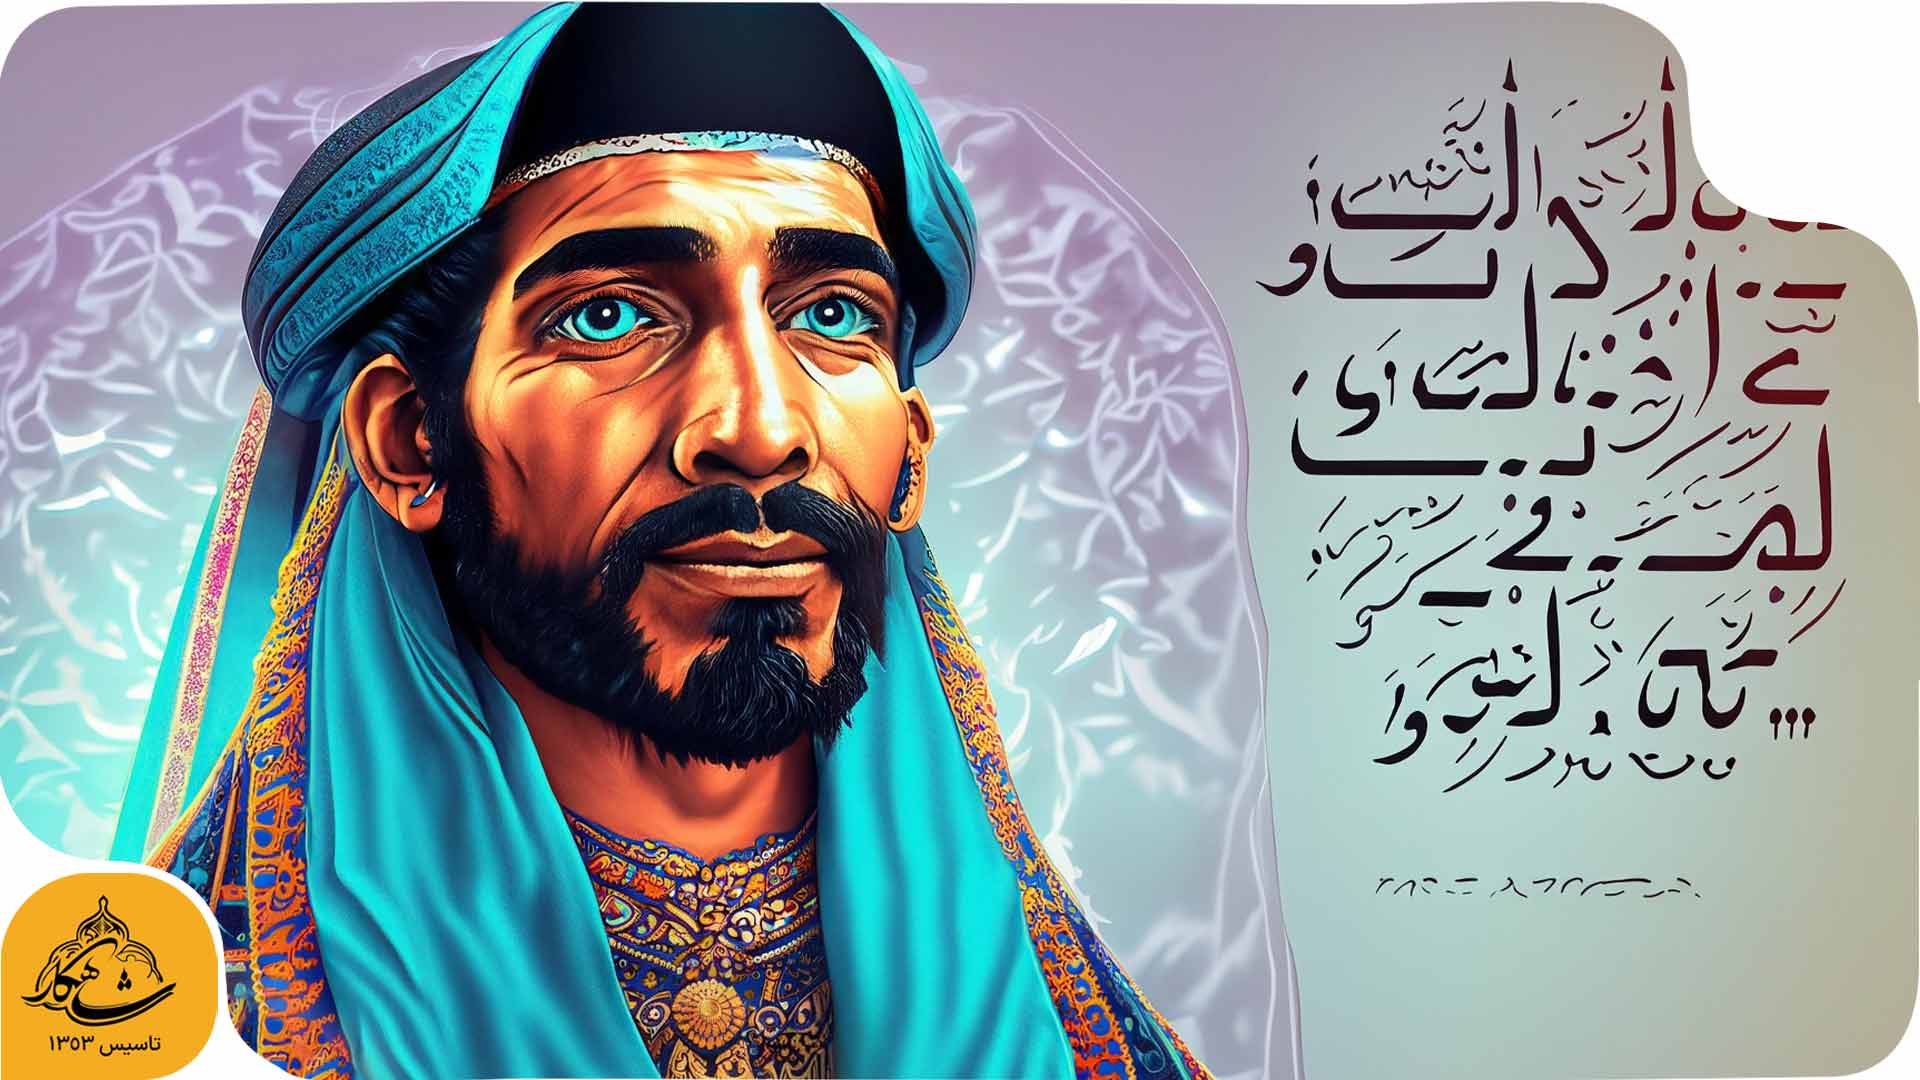 شاه عباس به دید هوش مصنوعی اصفهان